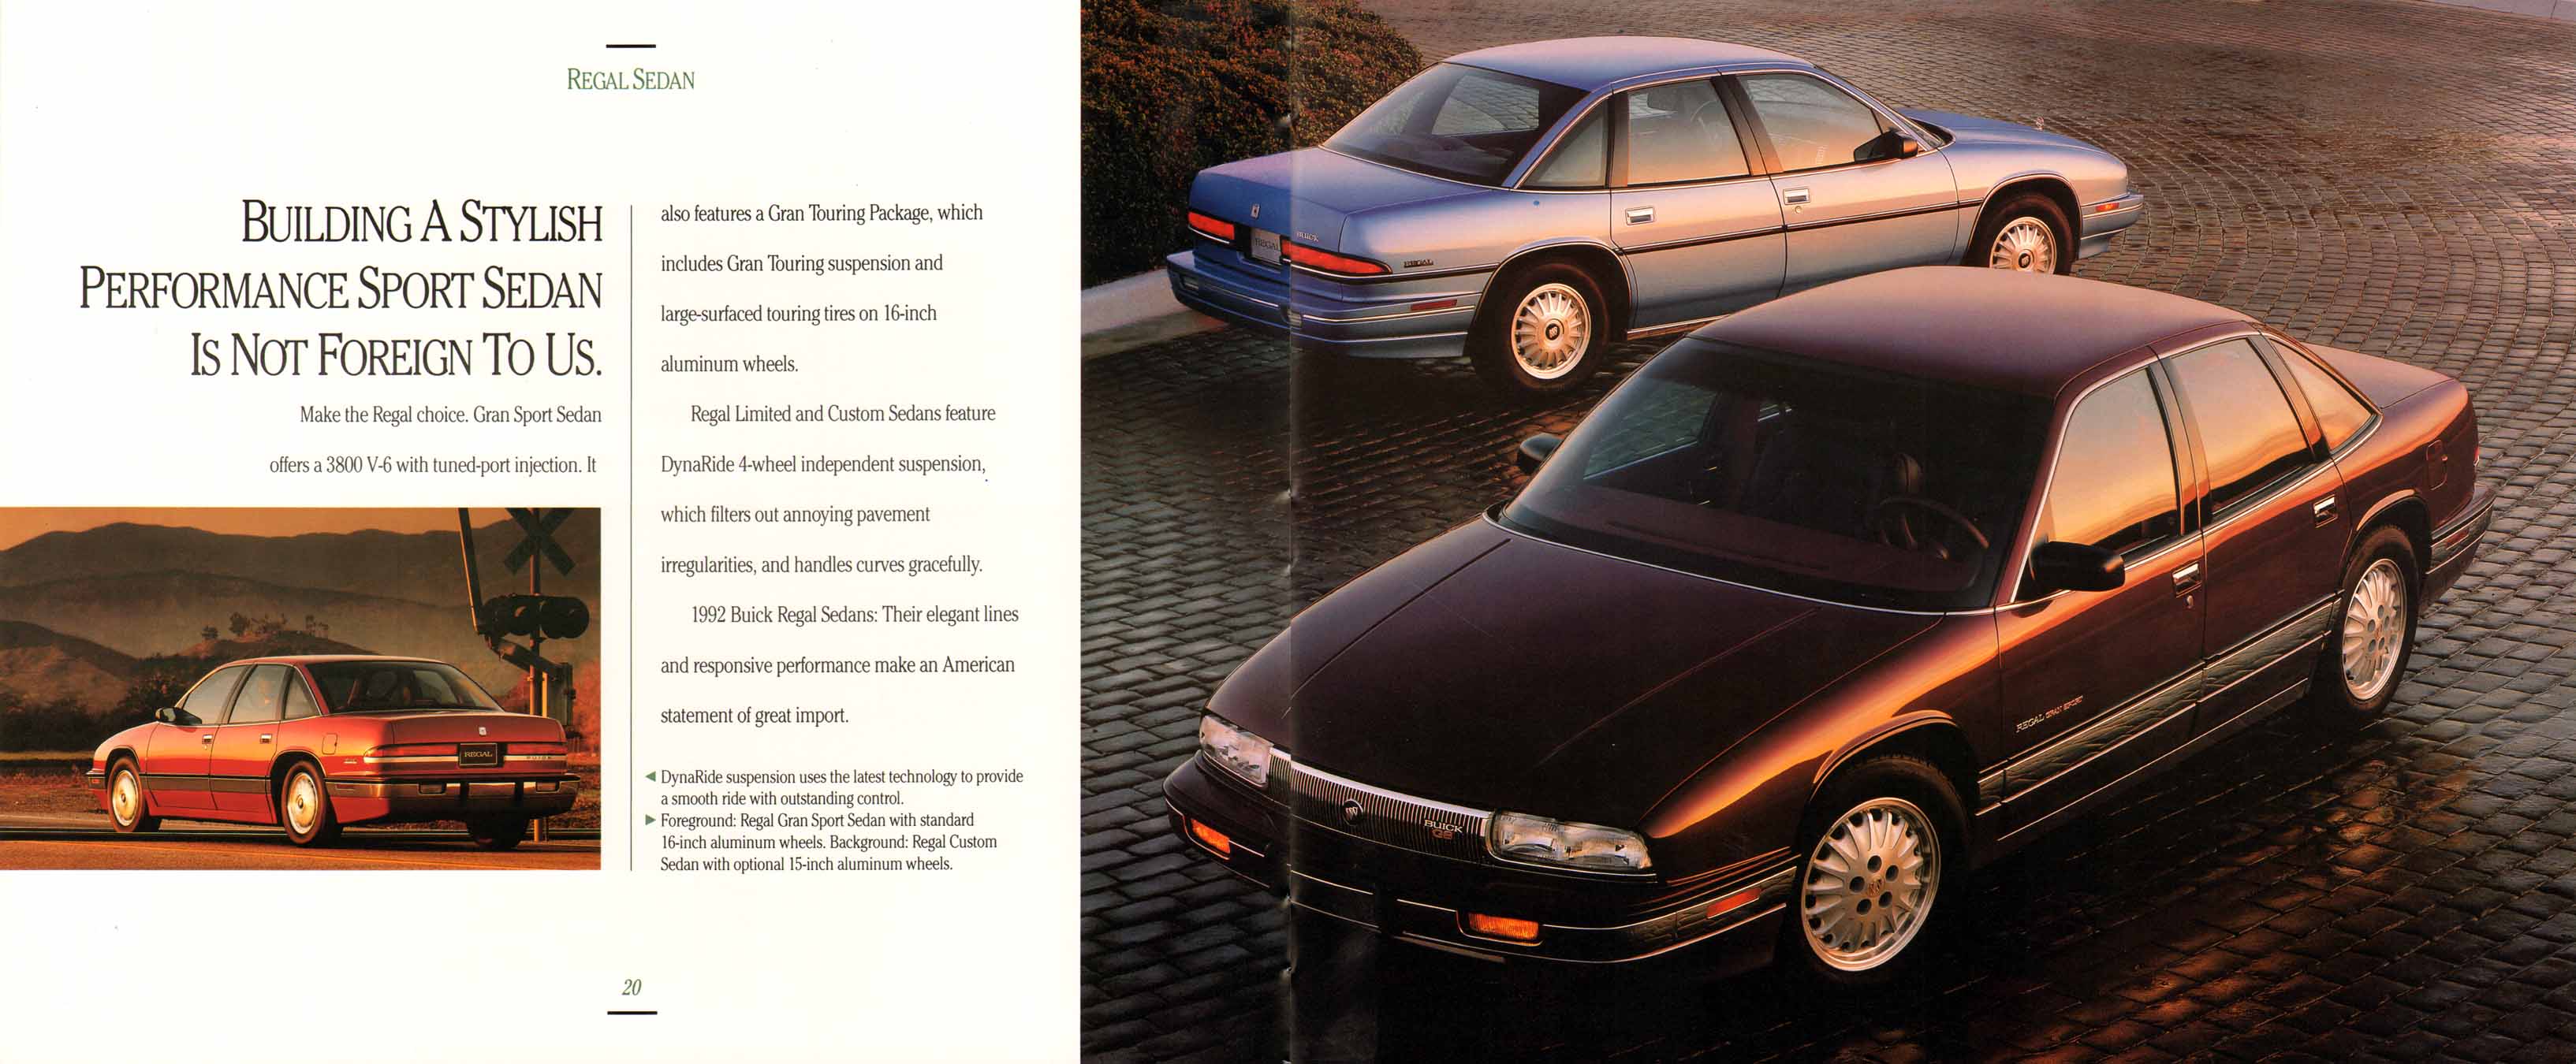 1992 Buick Full Line Prestige-20-21